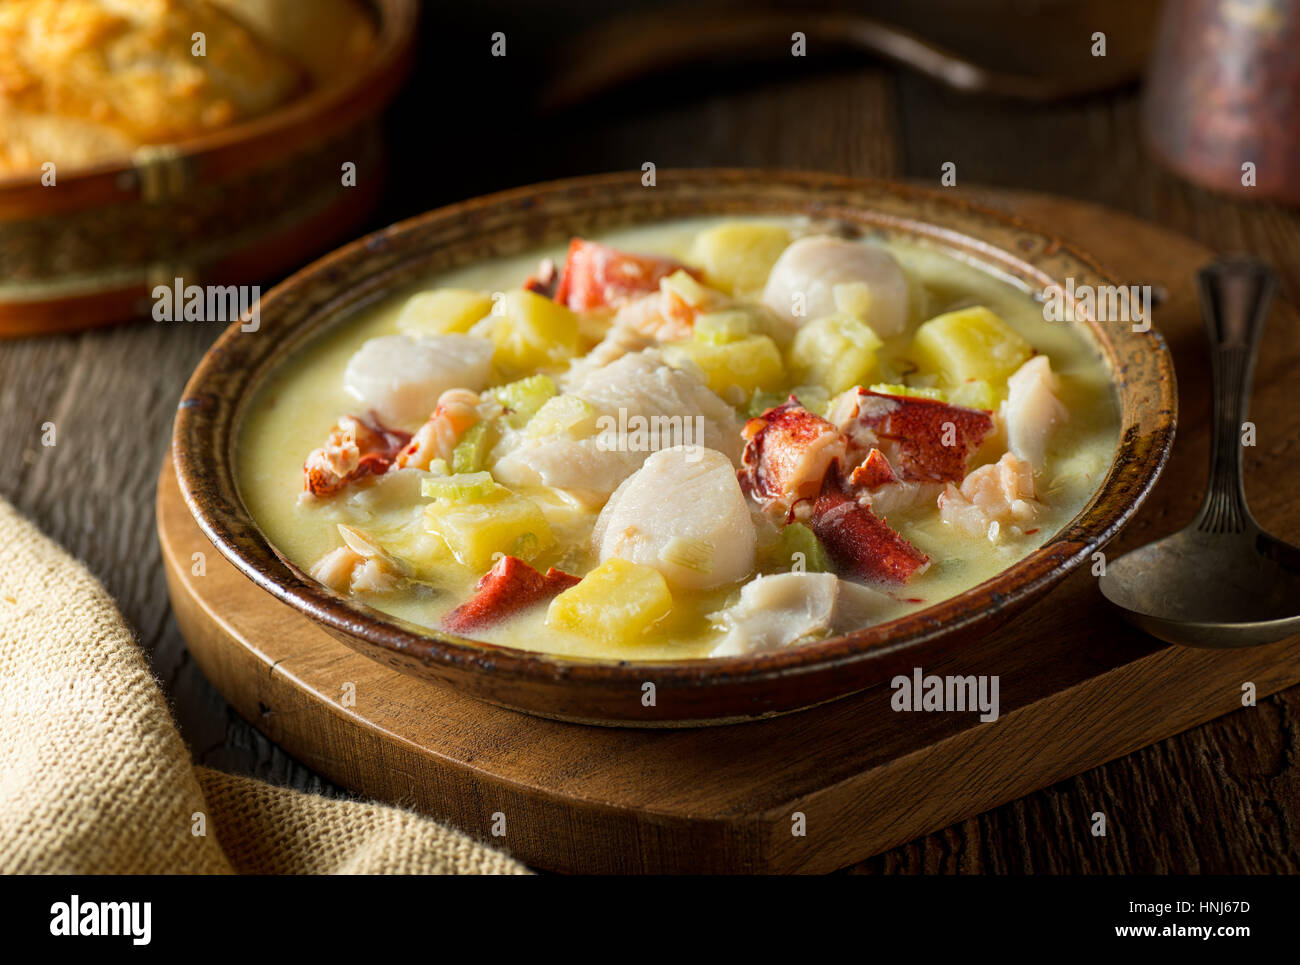 Un délicieux bol chaud composé de soupe aux fruits de mer avec homard, l'aiglefin, palourdes, pétoncles, et le safran. Banque D'Images